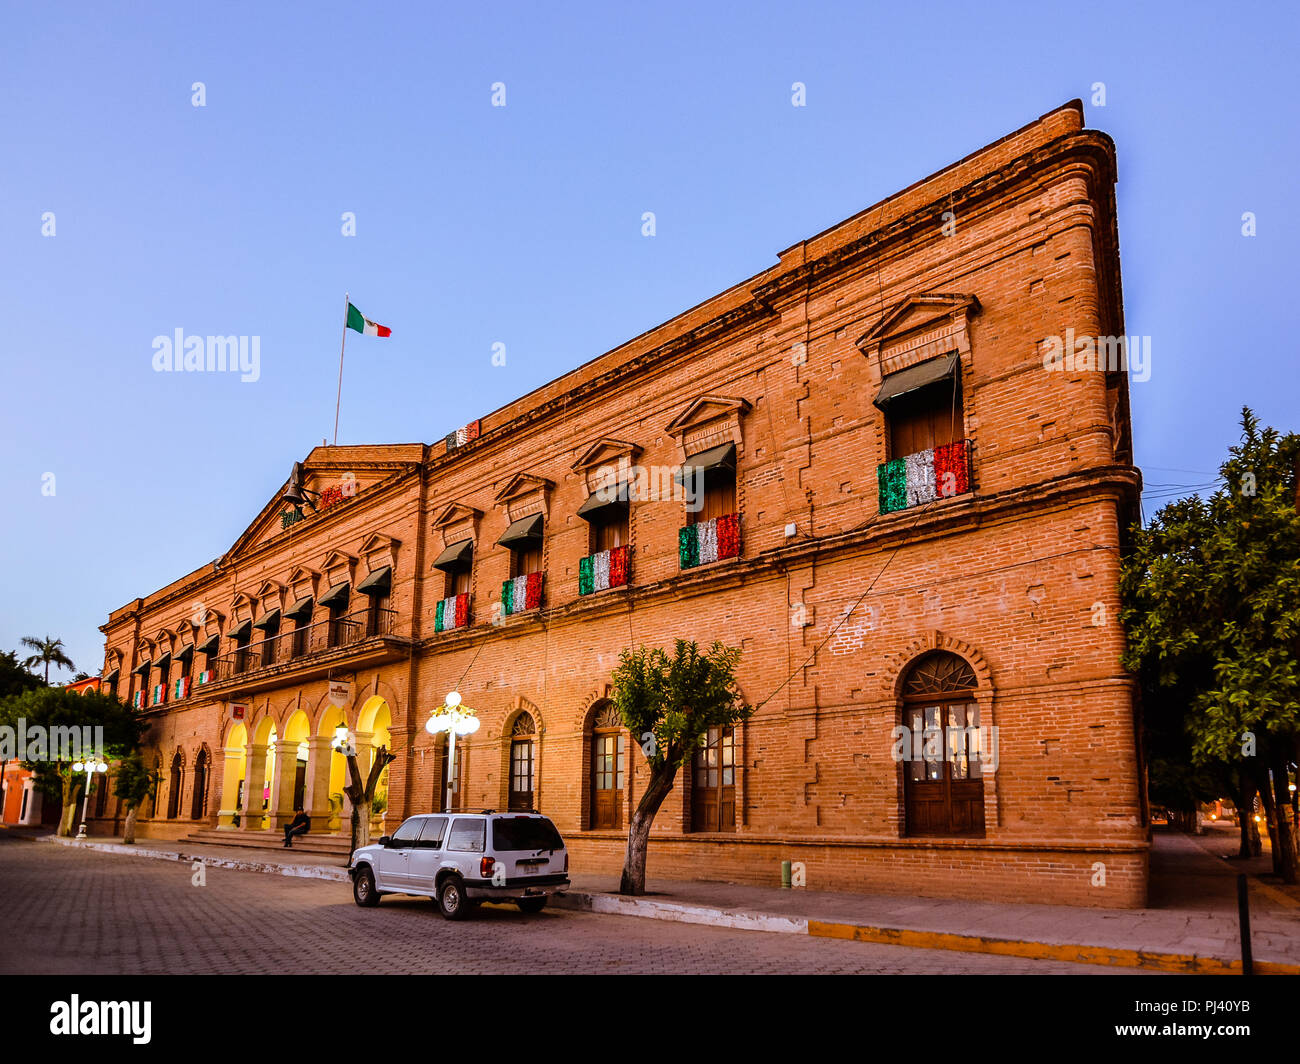 El Fuerte, Mexico - Oct. 31, 2016: Palacio Municipal - municipal building of El Fuerte, Sinaloa, Mexico. Stock Photo